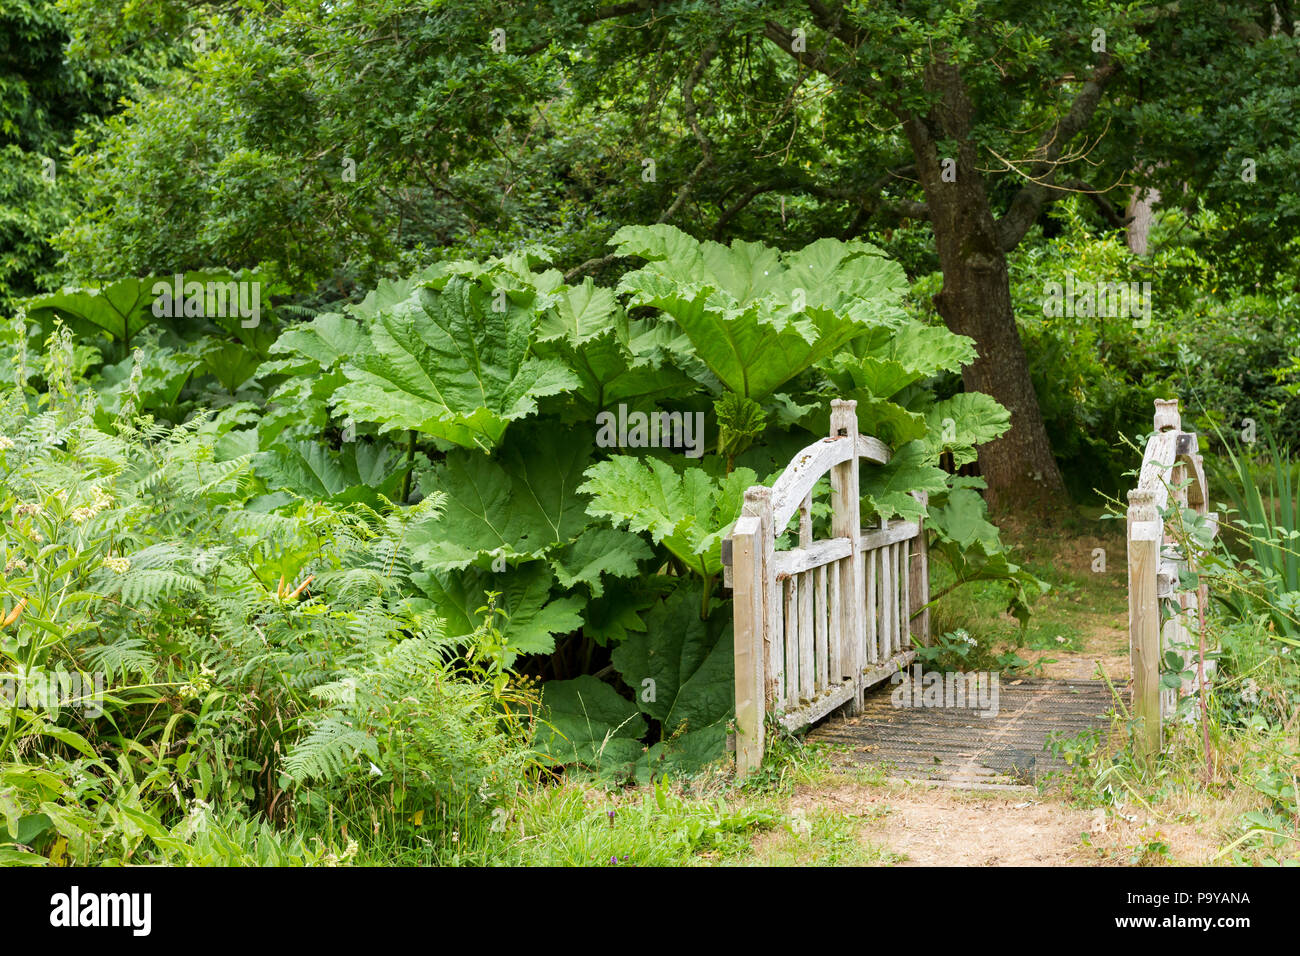 Blick über eine kleine Fußgängerbrücke in Wäldern mit einem Gunnera manicata (Brasilianischer Riese Rhabarber) Pflanze wächst, England, Vereinigtes Königreich Stockfoto